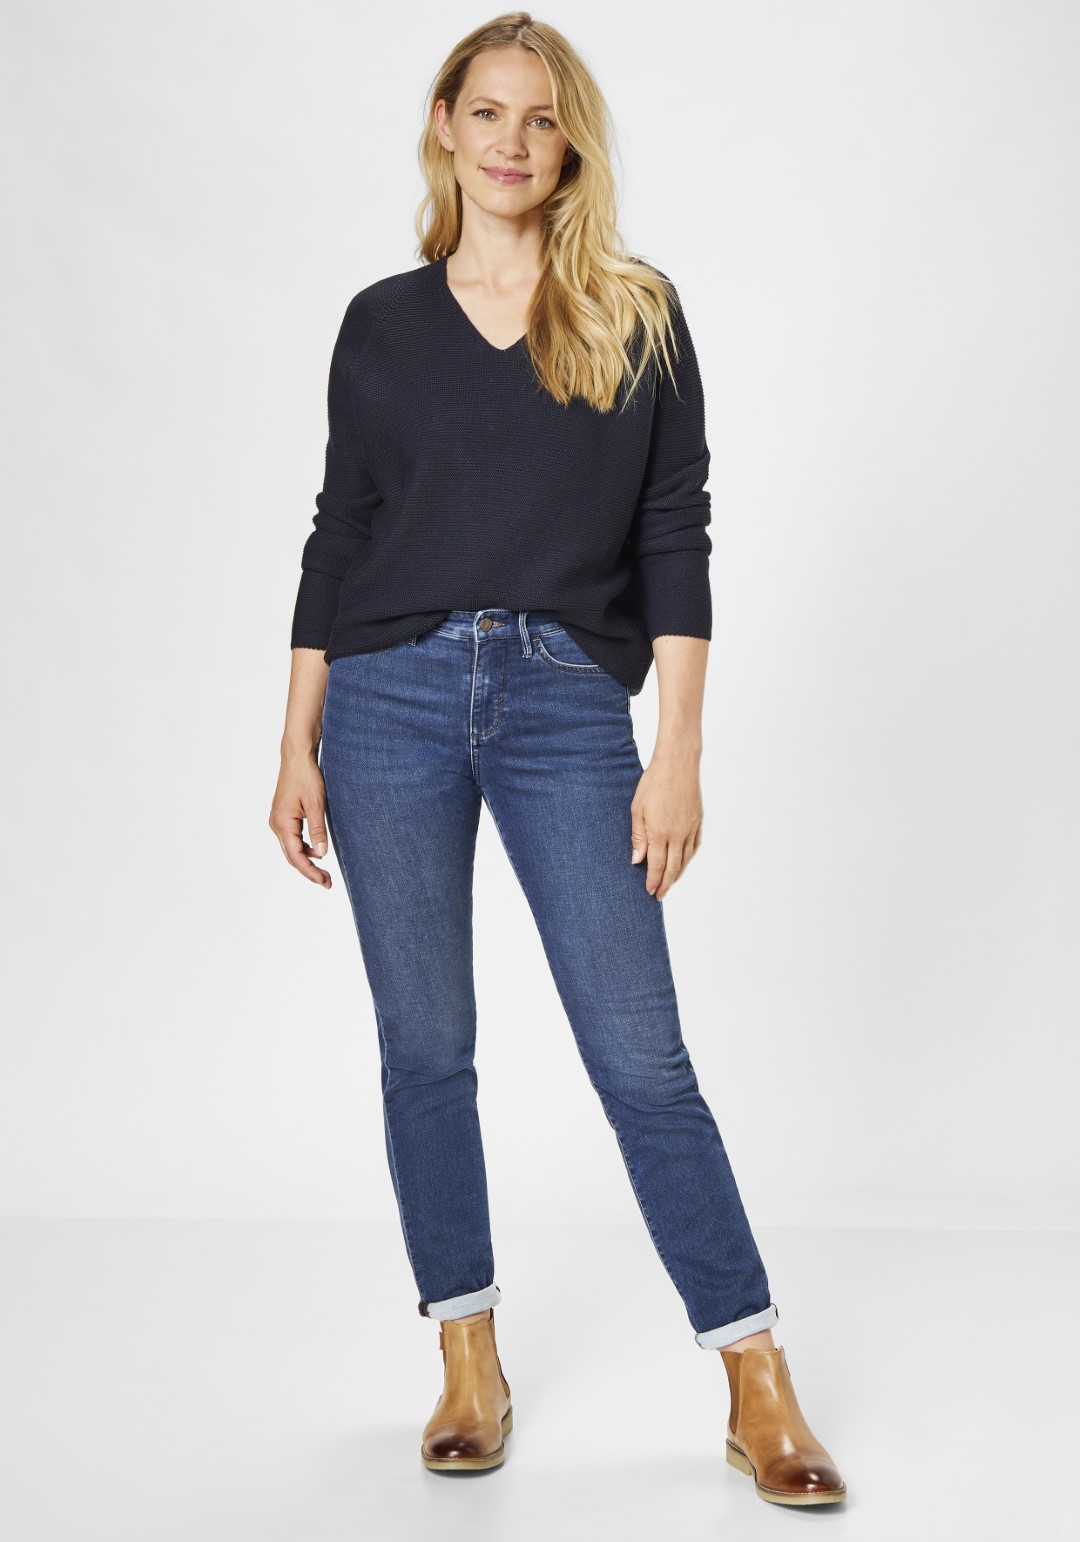 Damen-Jeans direkt vom Hersteller kaufen | PADDOCK\'S Online Shop